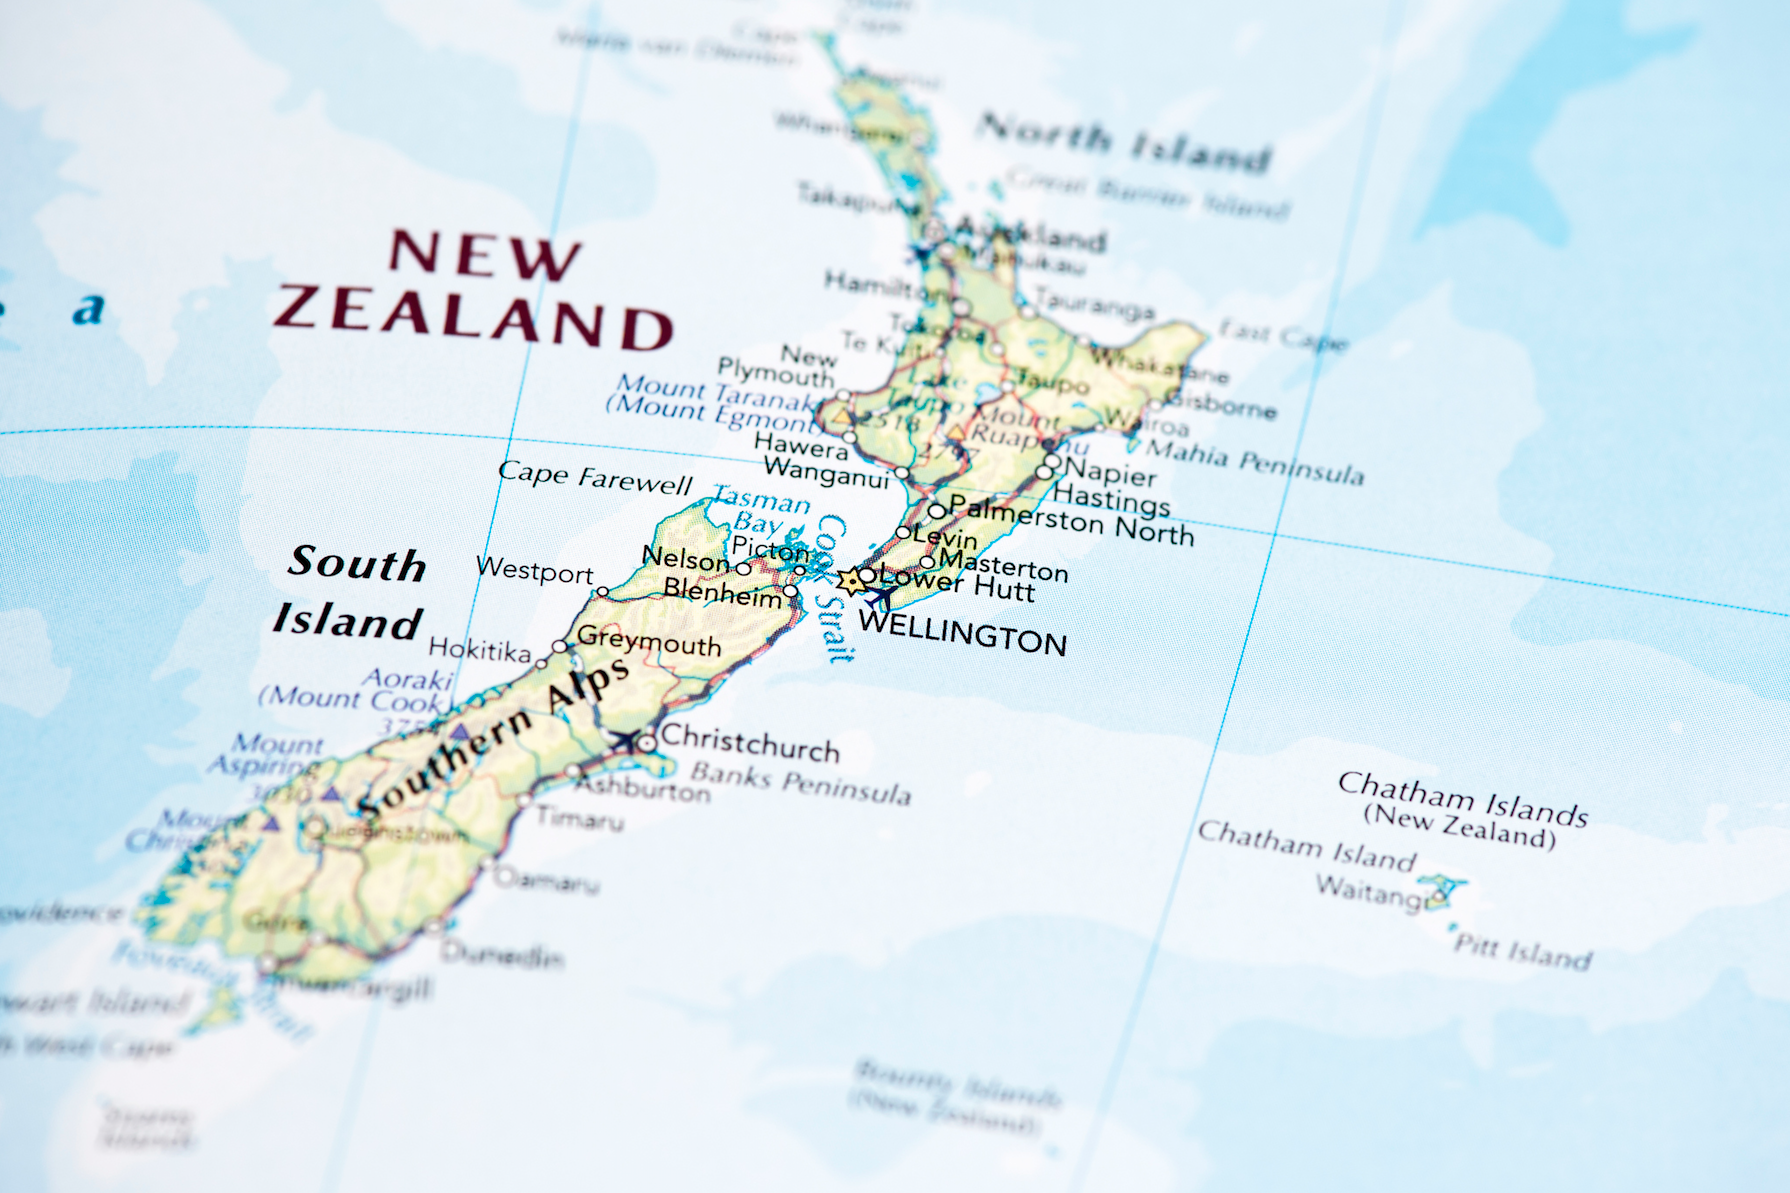 New zealand where. Географическая карта новой Зеландии на английском языке. Новая Зеландия карта географическая. Карта новой Зеландии на русском языке с городами подробная. Остров новая Зеландия на контурной карте.